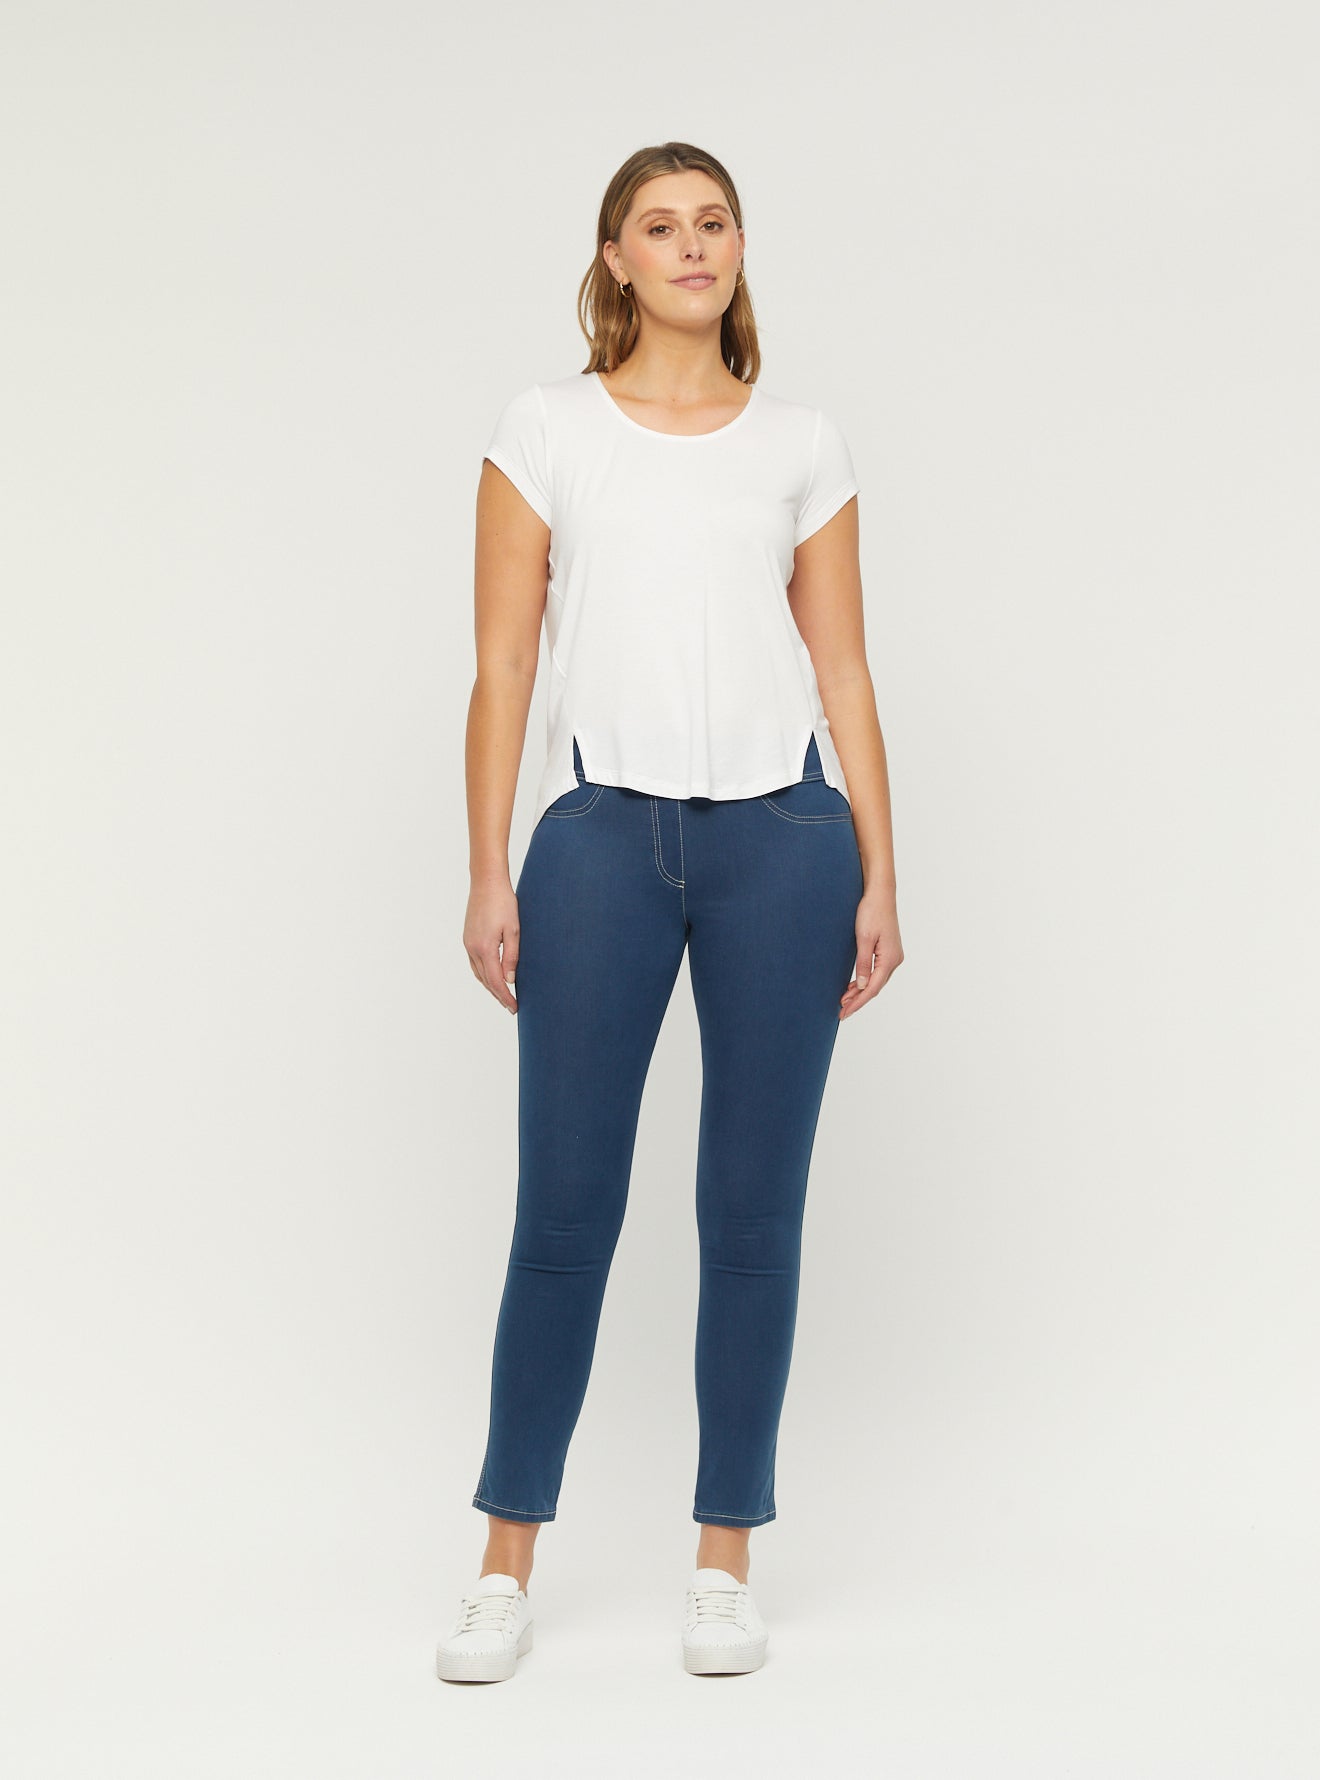 Rosa Straight Leg Jean - Women's Clothing Online Australia